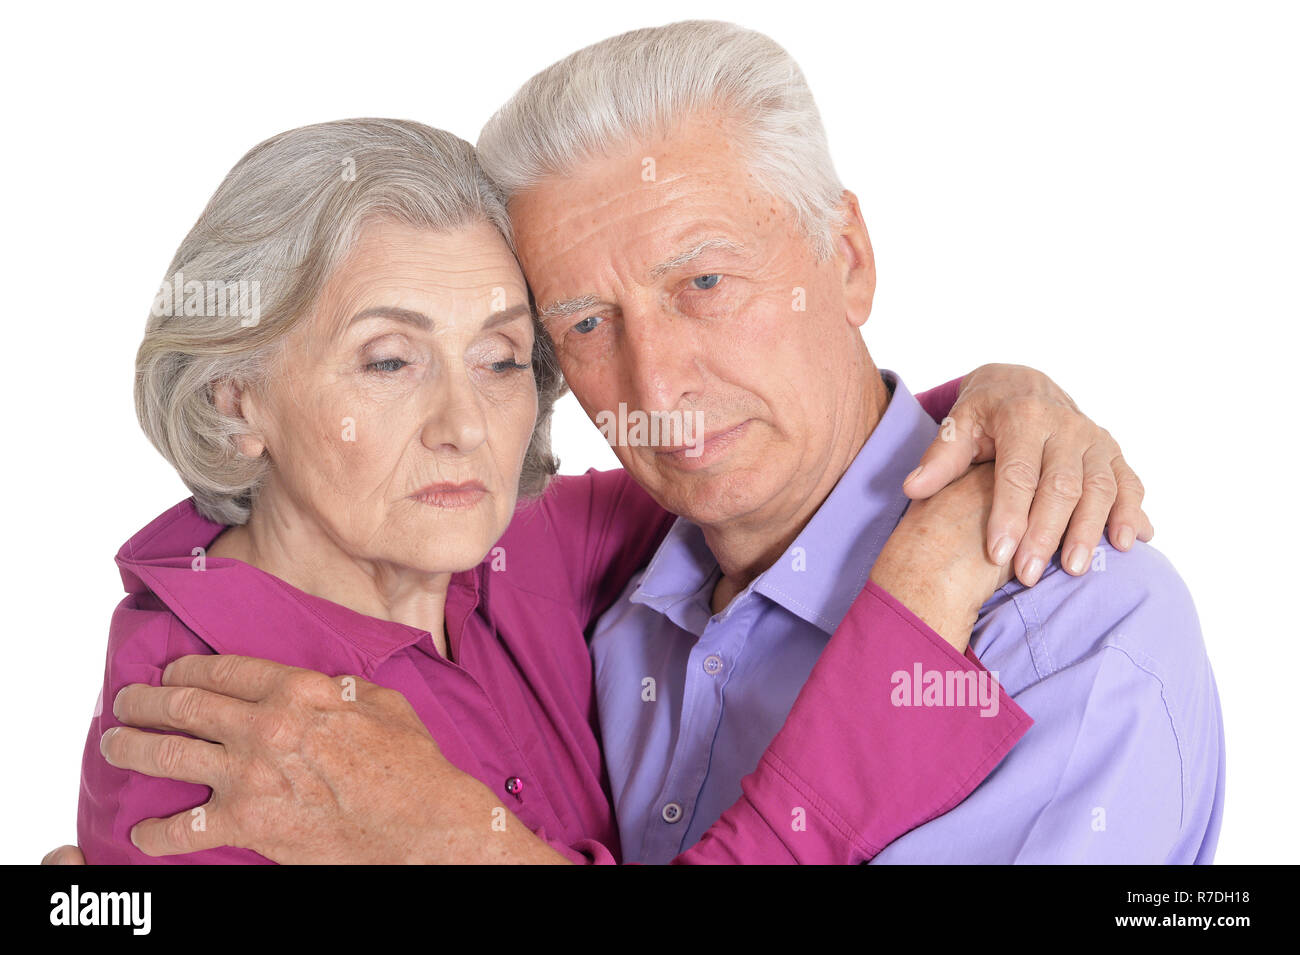 Sad senior couple isolated on white background Stock Photo